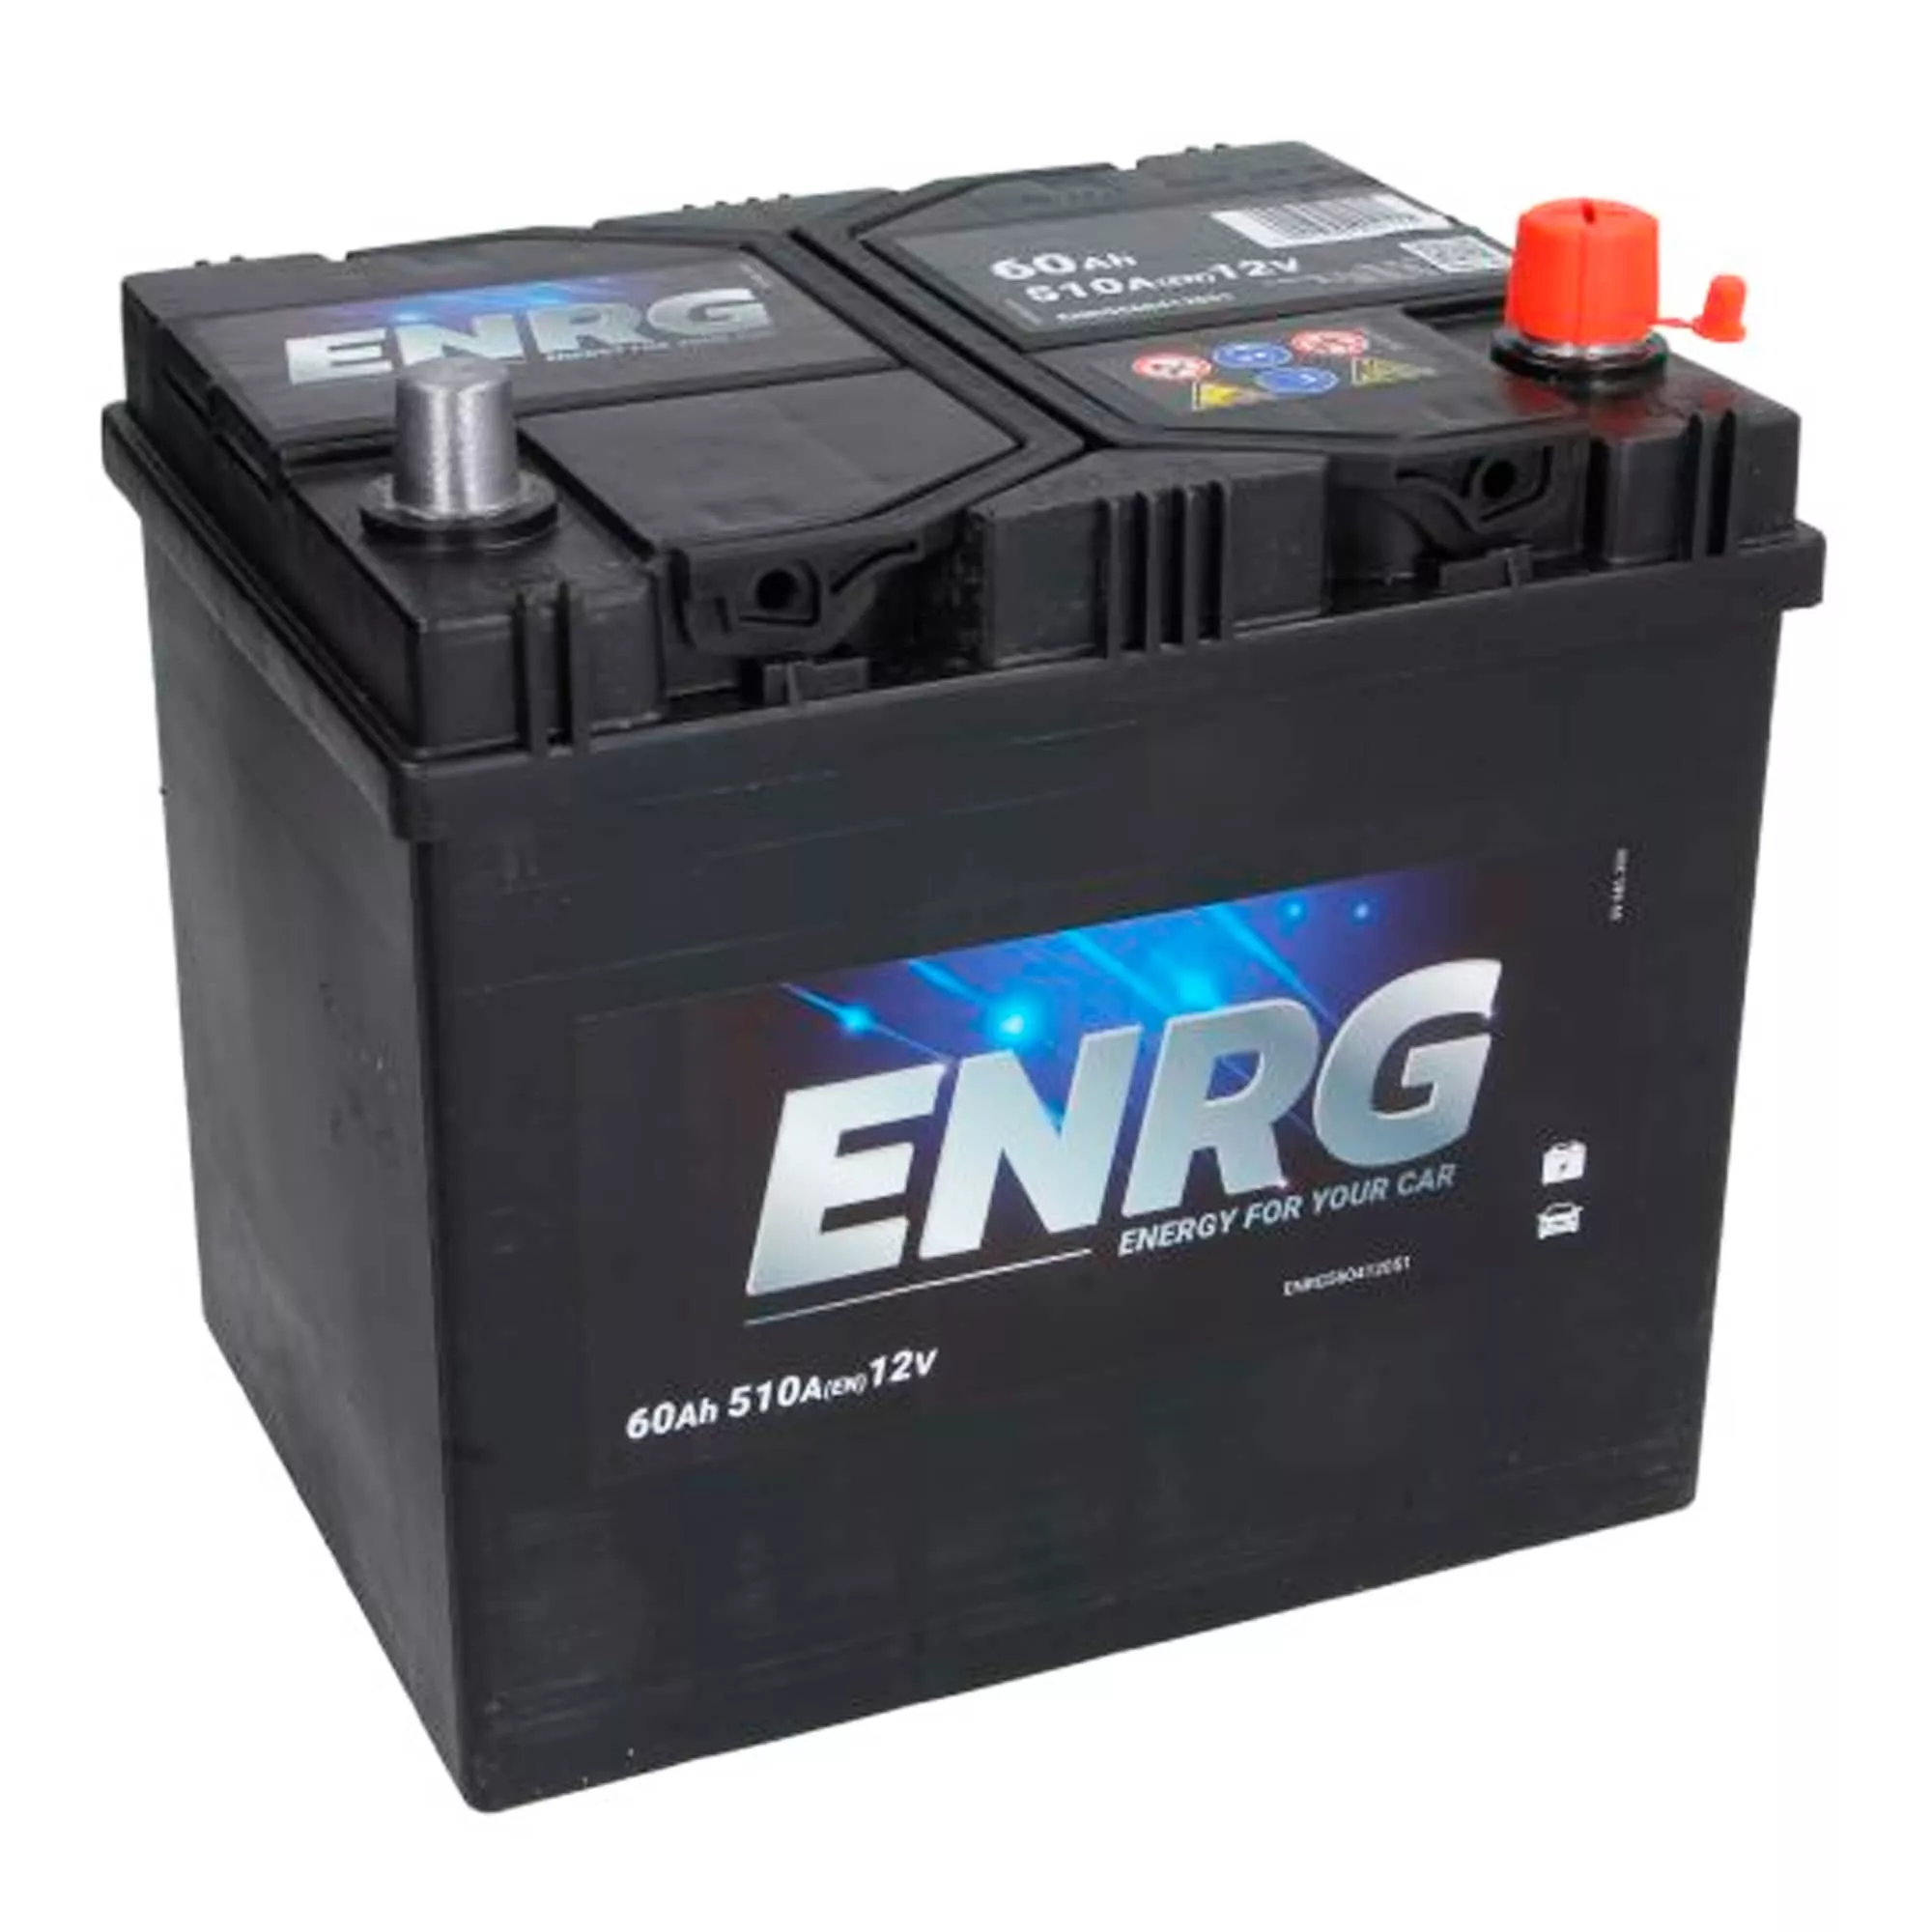 Автомобильный аккумулятор ENRG 12В 60AH АзЕ 510А BUDGET (ENRG560412051)